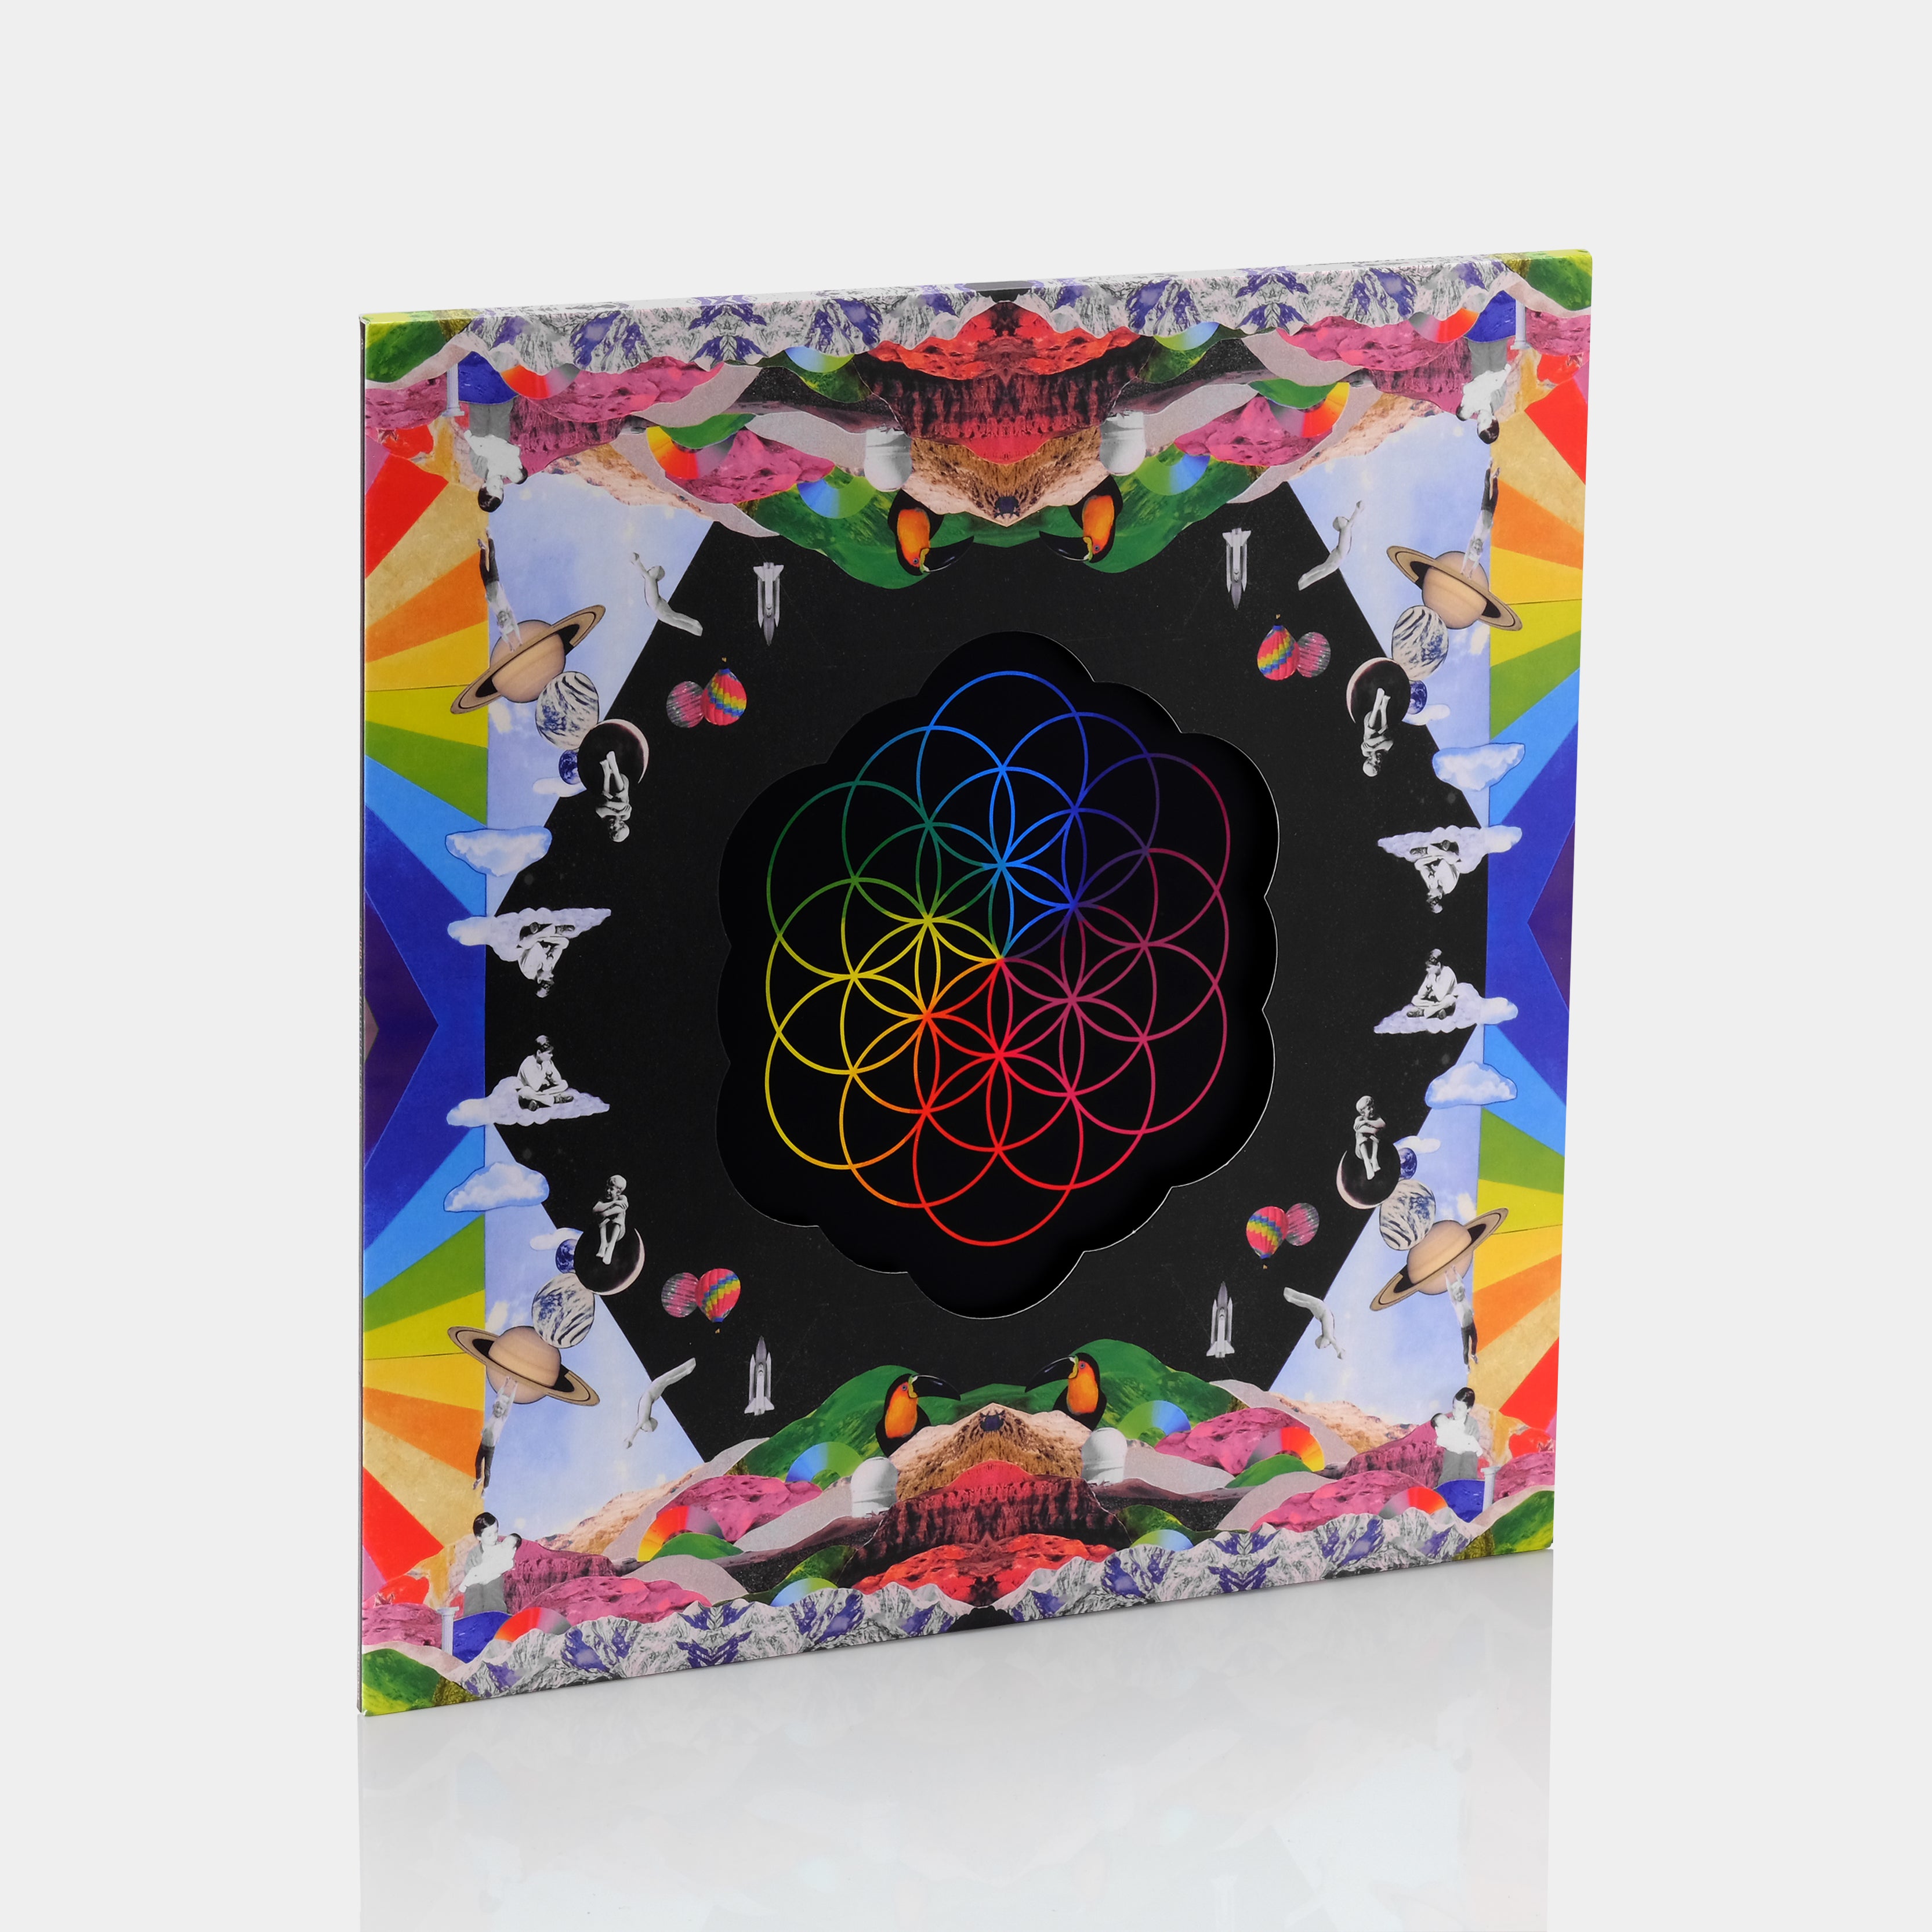 Coldplay - A Head Full Of Dreams 2xLP Vinyl Record, coldplay vinyle 